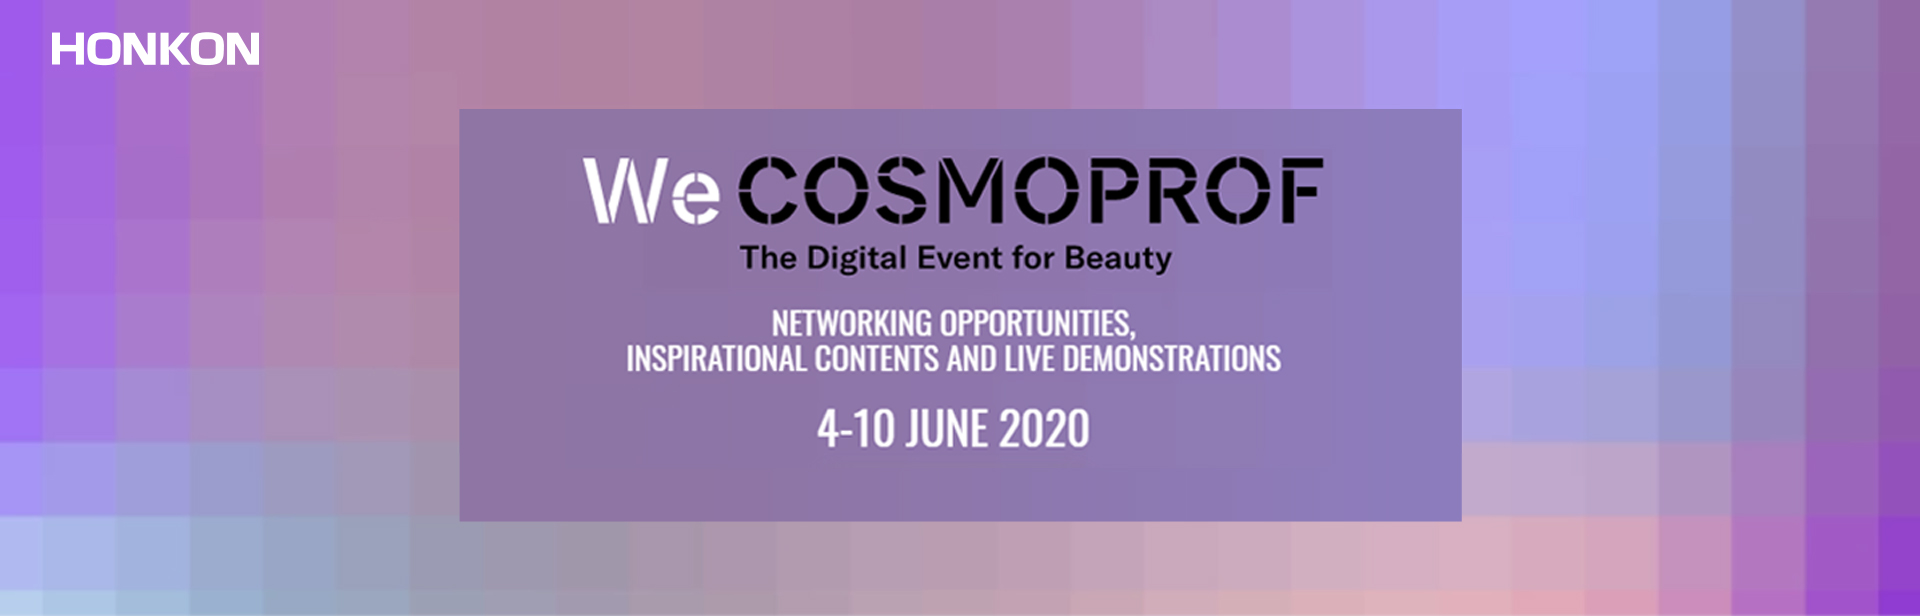 WeCOSMOPROF El evento digital de Beatuty del 4 al 10 de junio de 2020